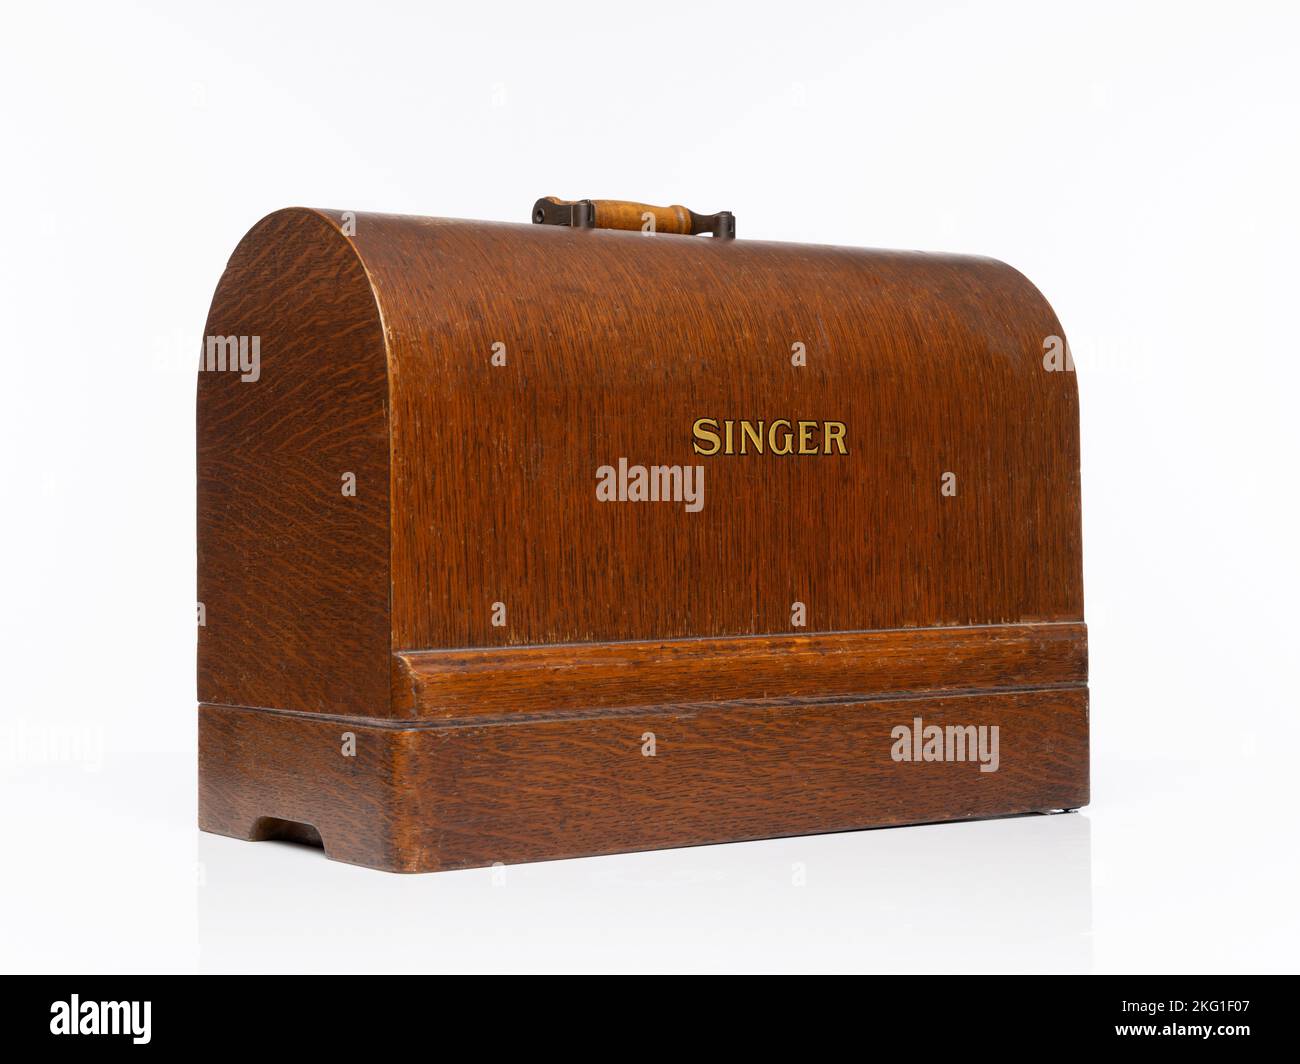 Mallette de transport en bois vintage isolée pour une machine à coudre Singer 99k Banque D'Images